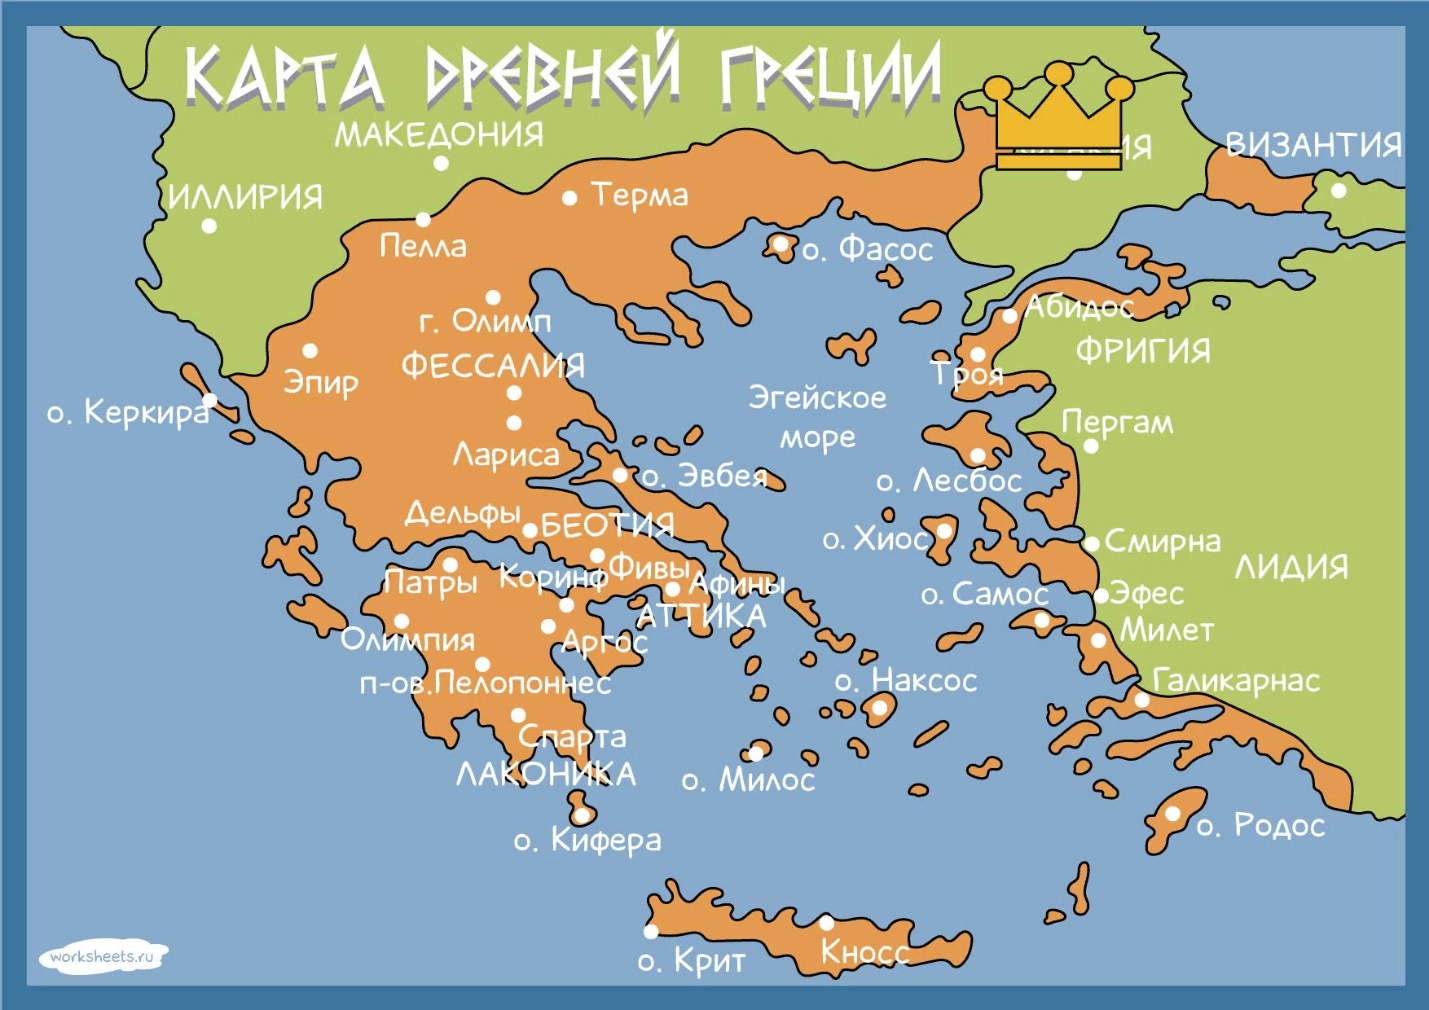 Рис. 1. Карта Древней Греции